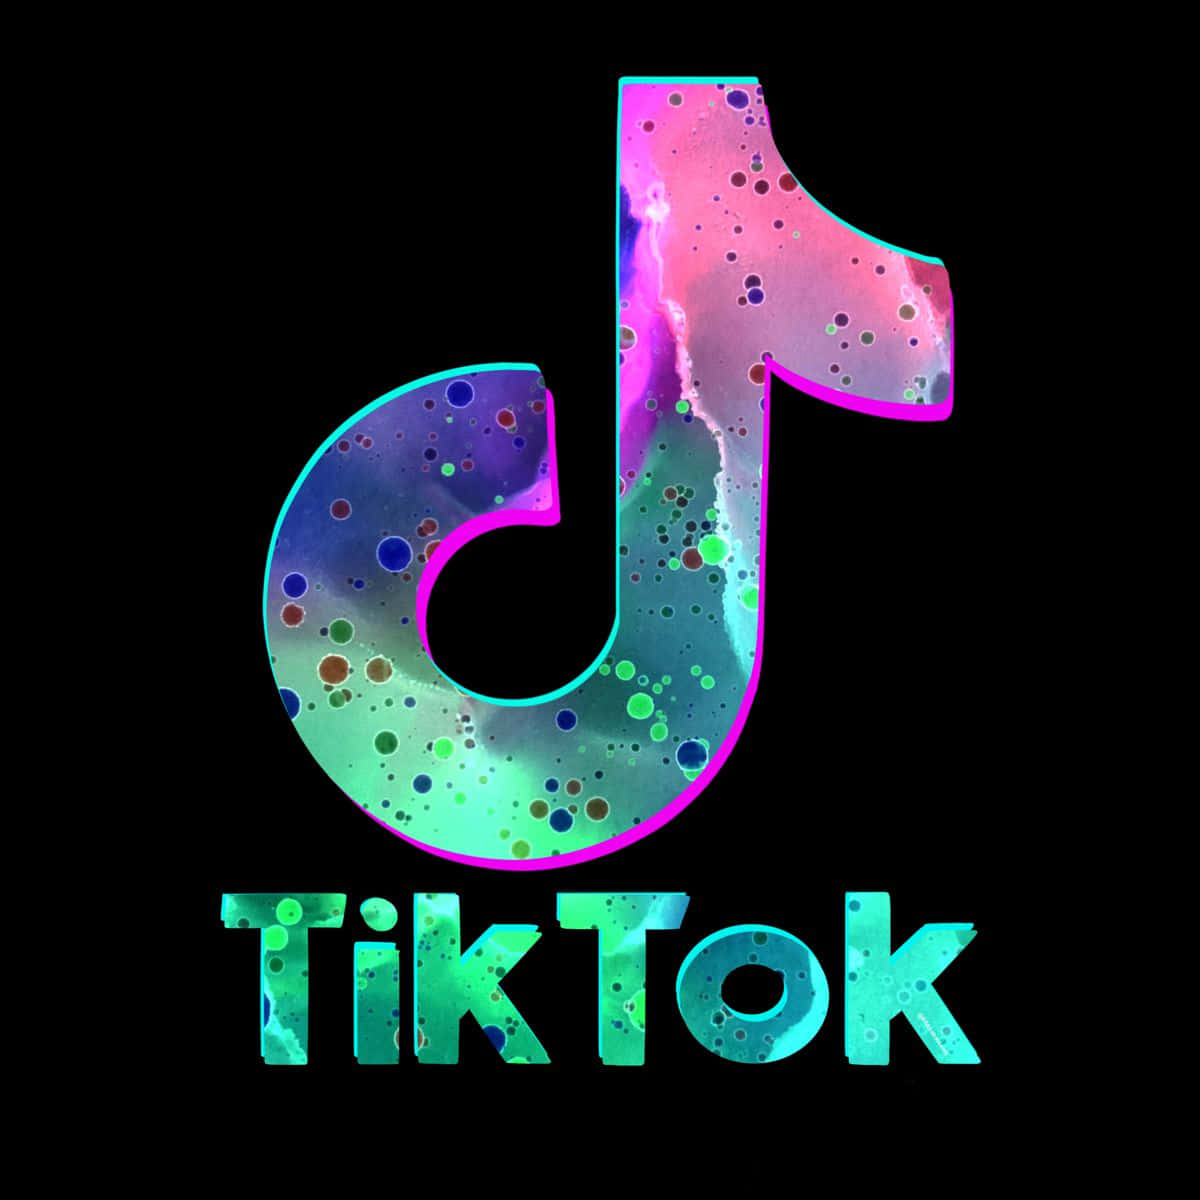 Tiktok Logo With Colorful Swirls